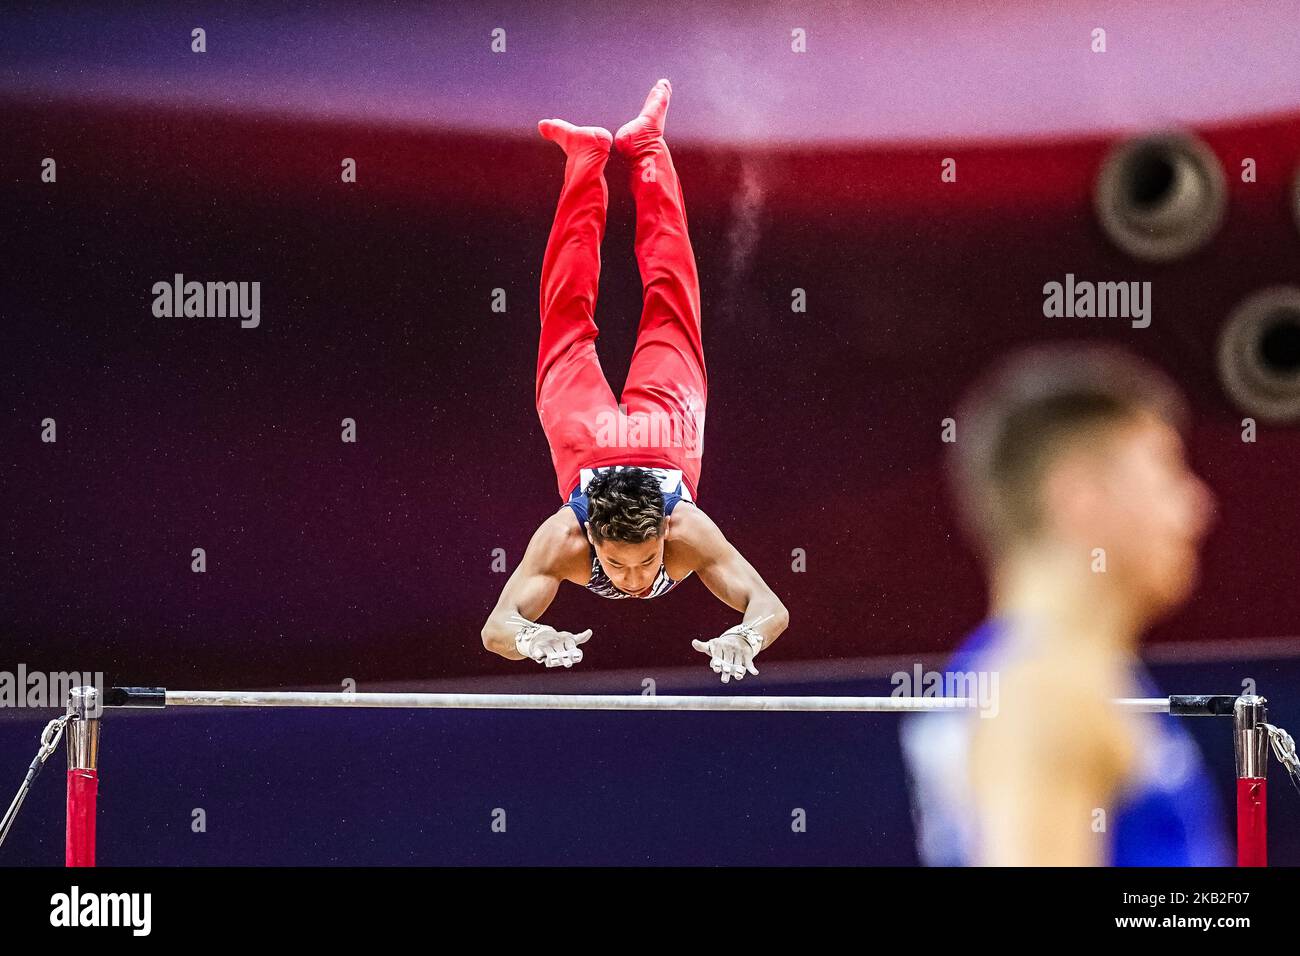 YUL Moldauer des États-Unis pendant la qualification horizontale au Dôme Aspire à Doha, Qatar, Championnat du monde de gymnastique ARTISTIQUE DE LA FIG le 26 octobre 2018. (Photo par Ulrik Pedersen/NurPhoto) Banque D'Images